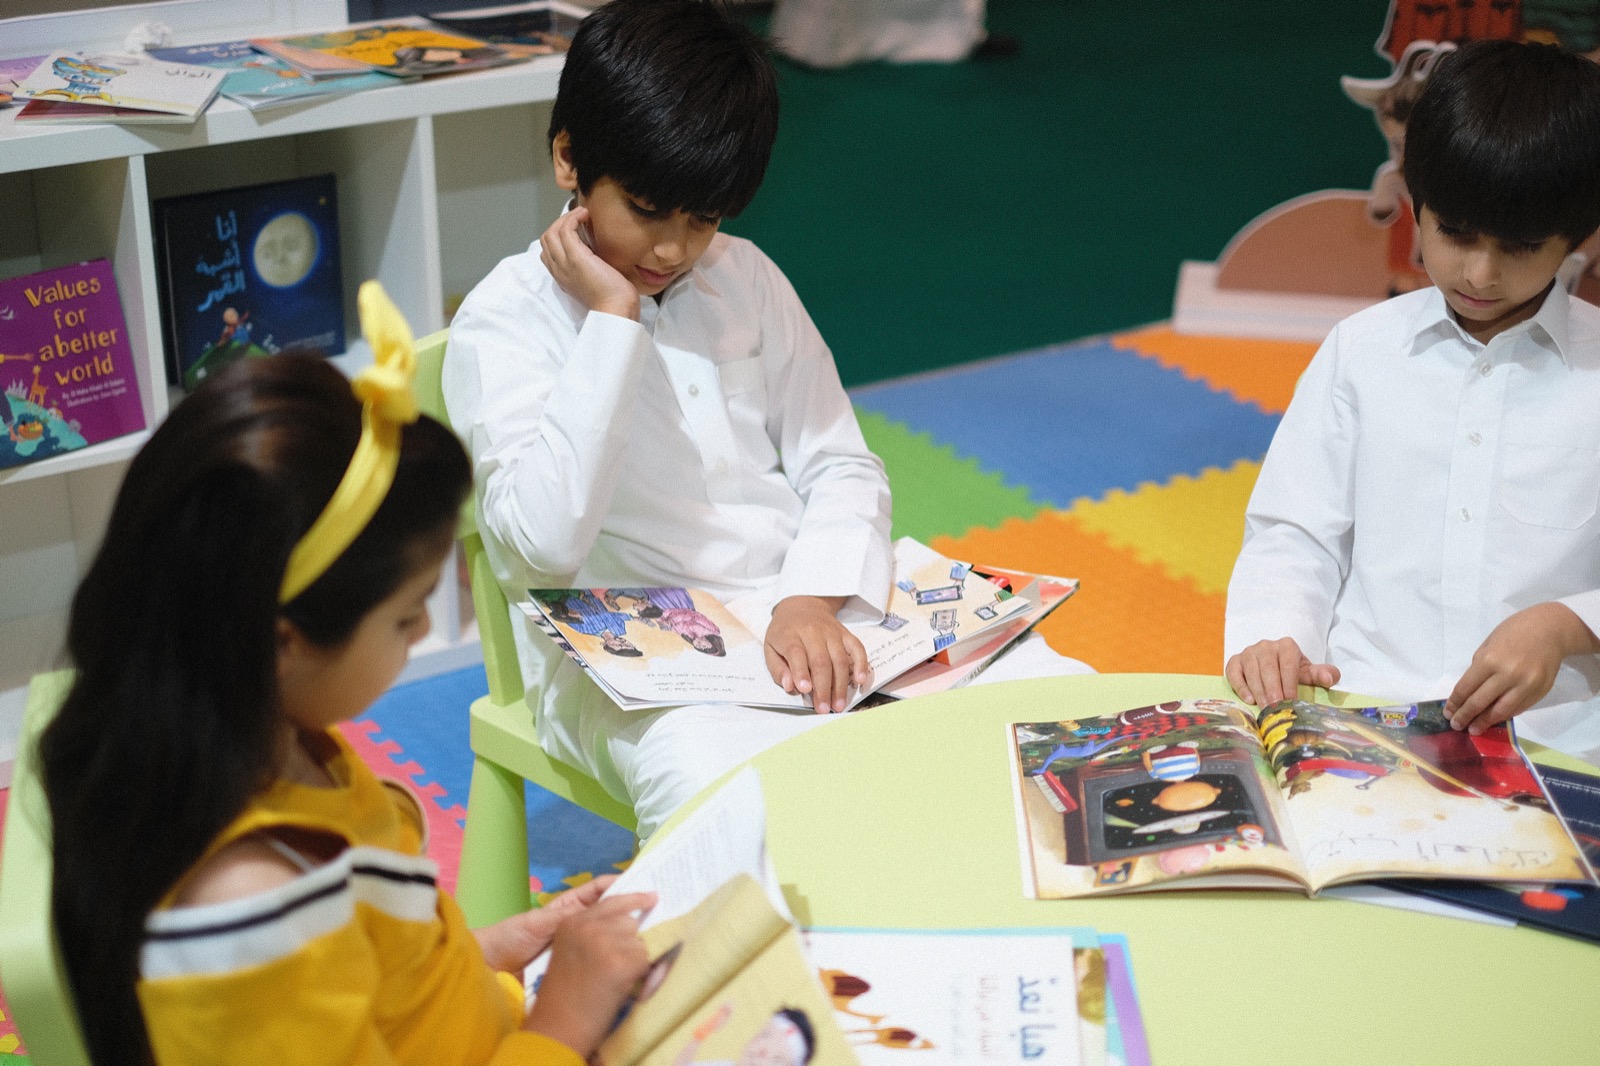 قائمة طويلة من إصدارات الأطفال واليافعين الجديدة تطرحها  دار جامعة حمد بن خليفة للنشر في معرض الدوحة الدولي للكتاب ٢٠١٨